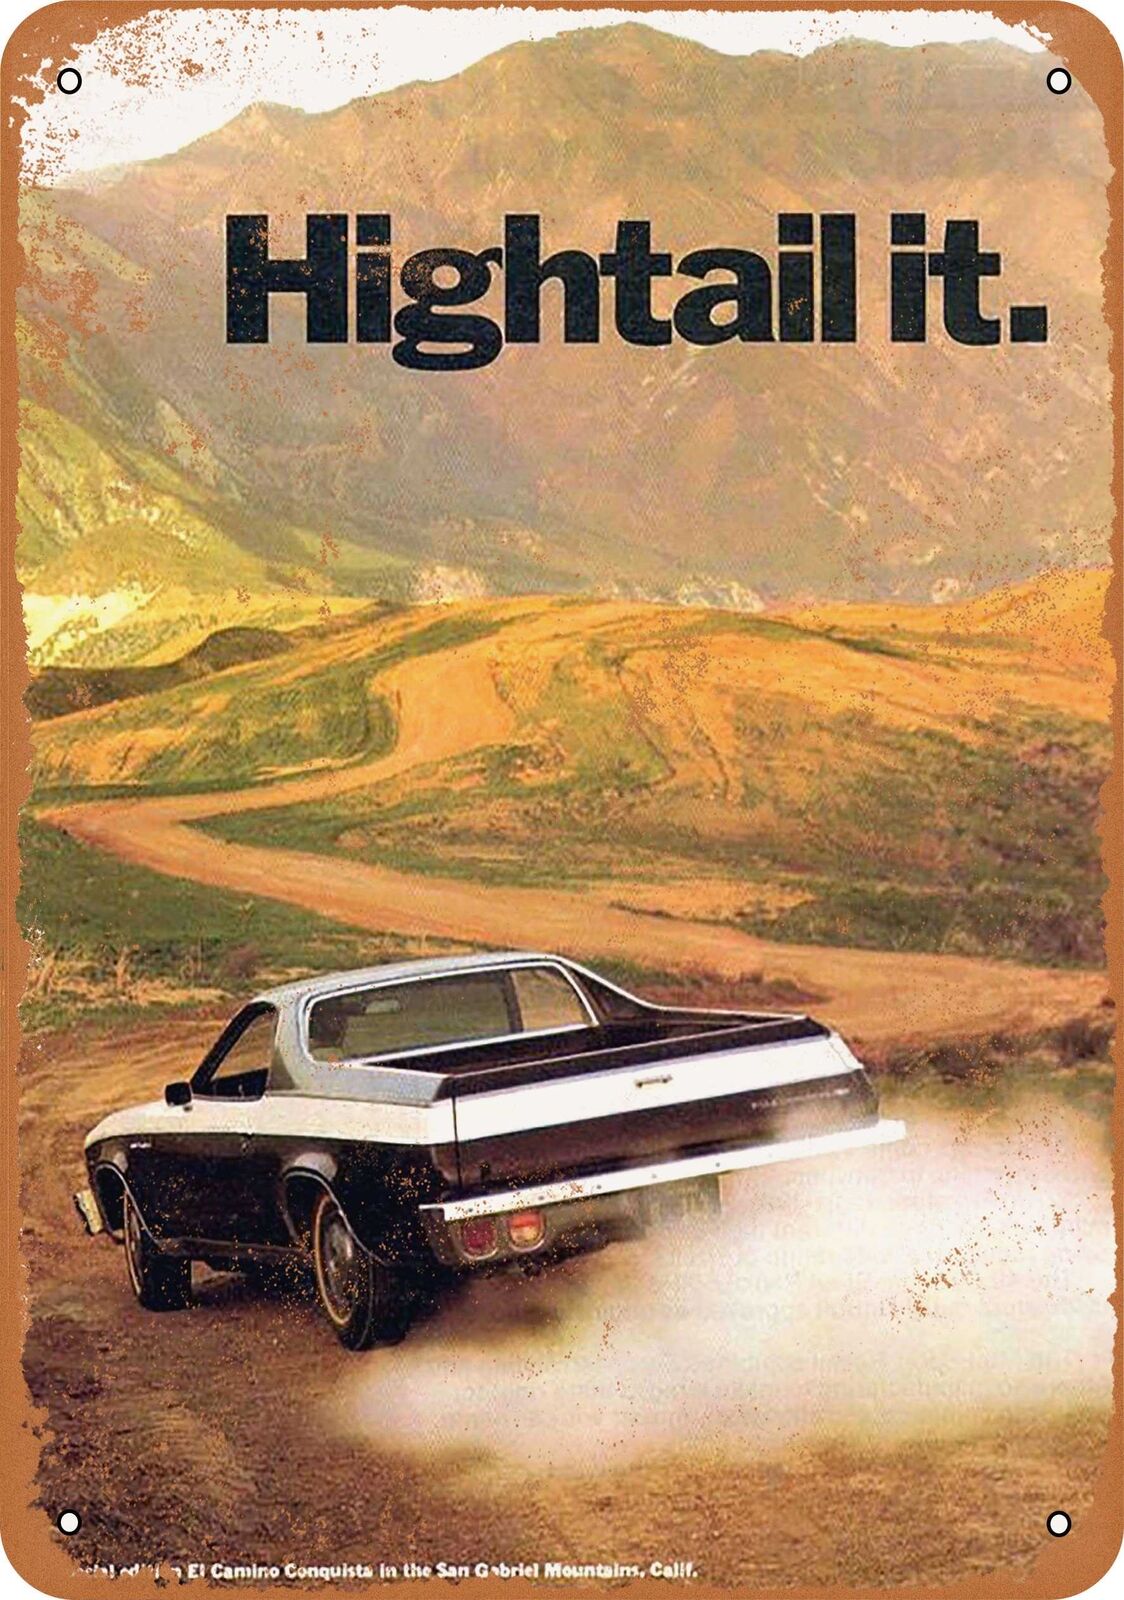 Metal Sign - 1973 Chevrolet El Camino Conquista - Vintage Look Reproduction